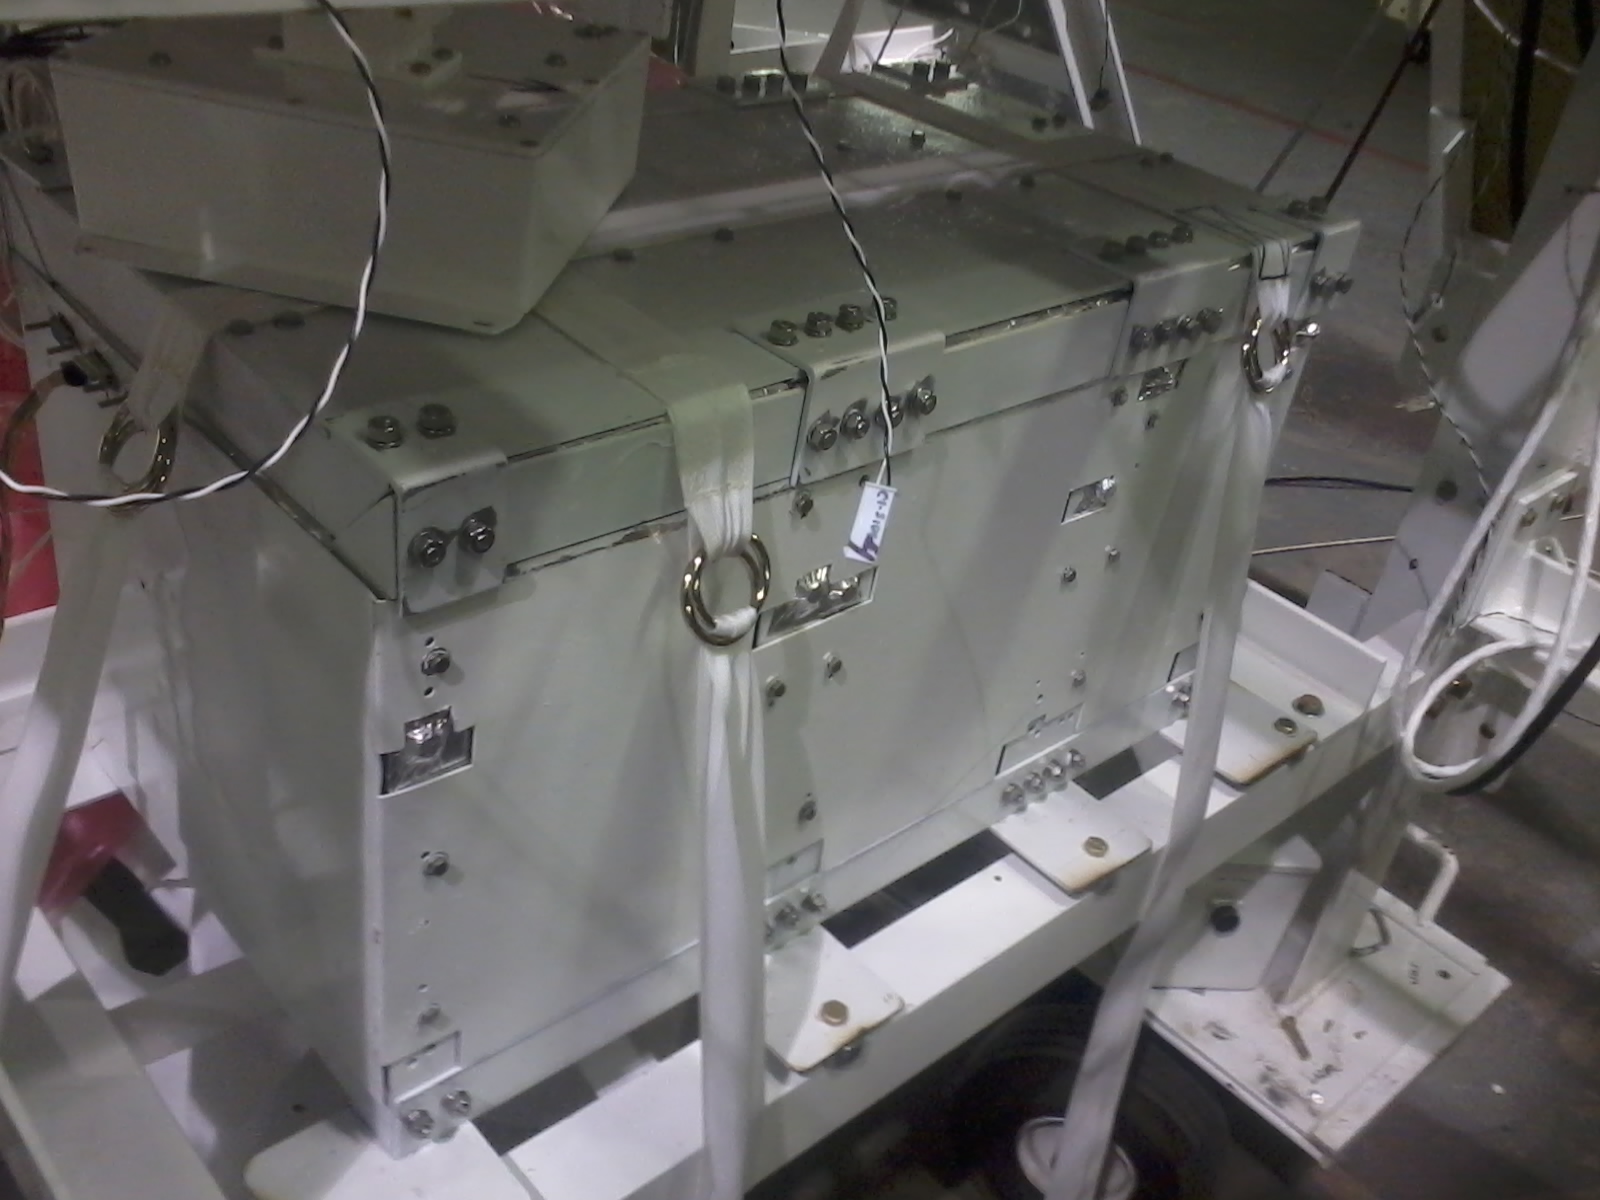 PIXQUI instalado en la gondola de la NASA previo a vuelo